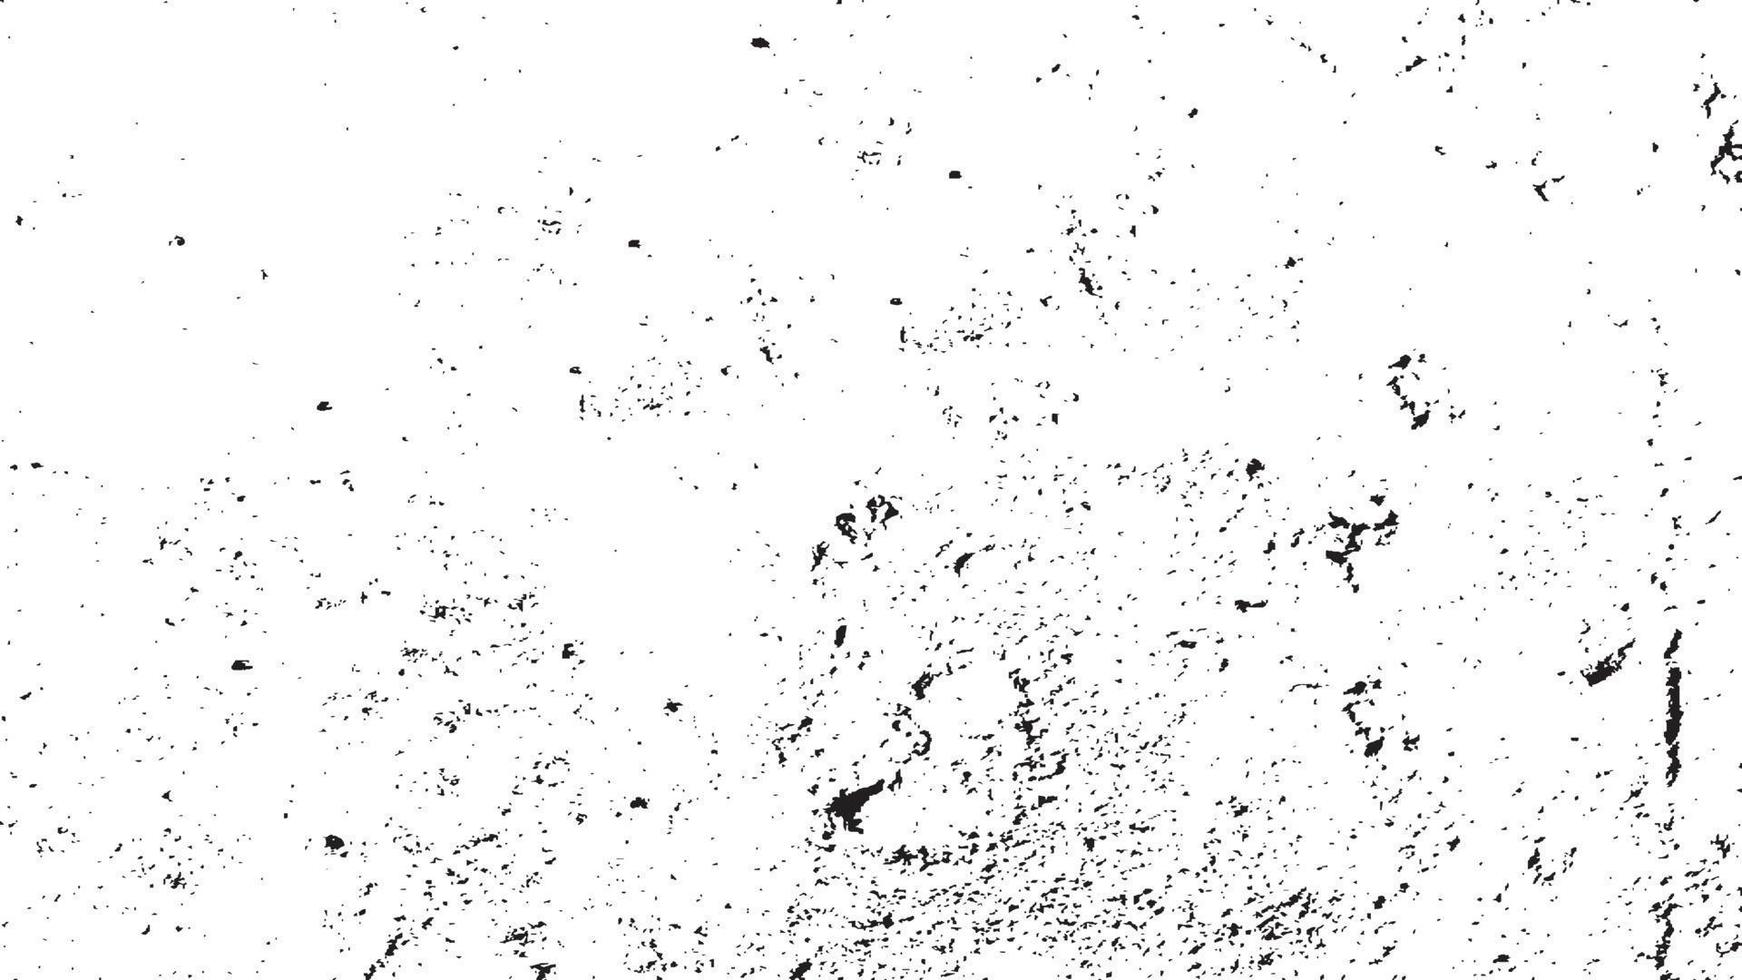 Vektor-Distressed-Dirt-Overlay, Retro-Distressed-Grunge-Textur, Grunge-Hintergrund schwarz und weiß. Textur von Spänen, Rissen, Kratzern, Schrammen, Staub, Schmutz. altes Vintage-Vektormuster. vektor